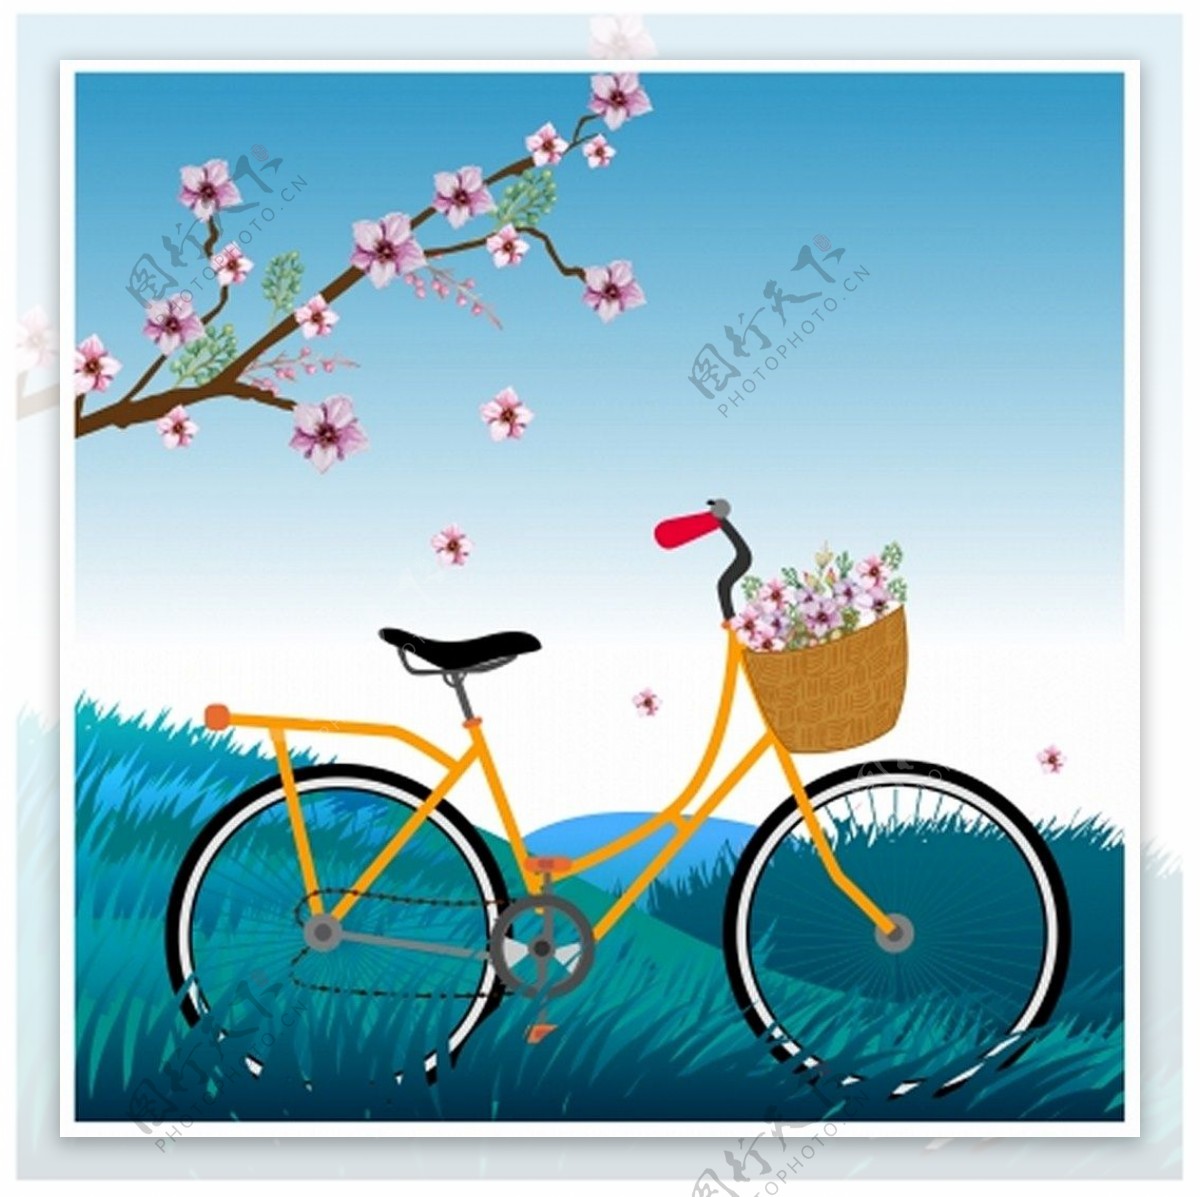 樱花树下的自行车